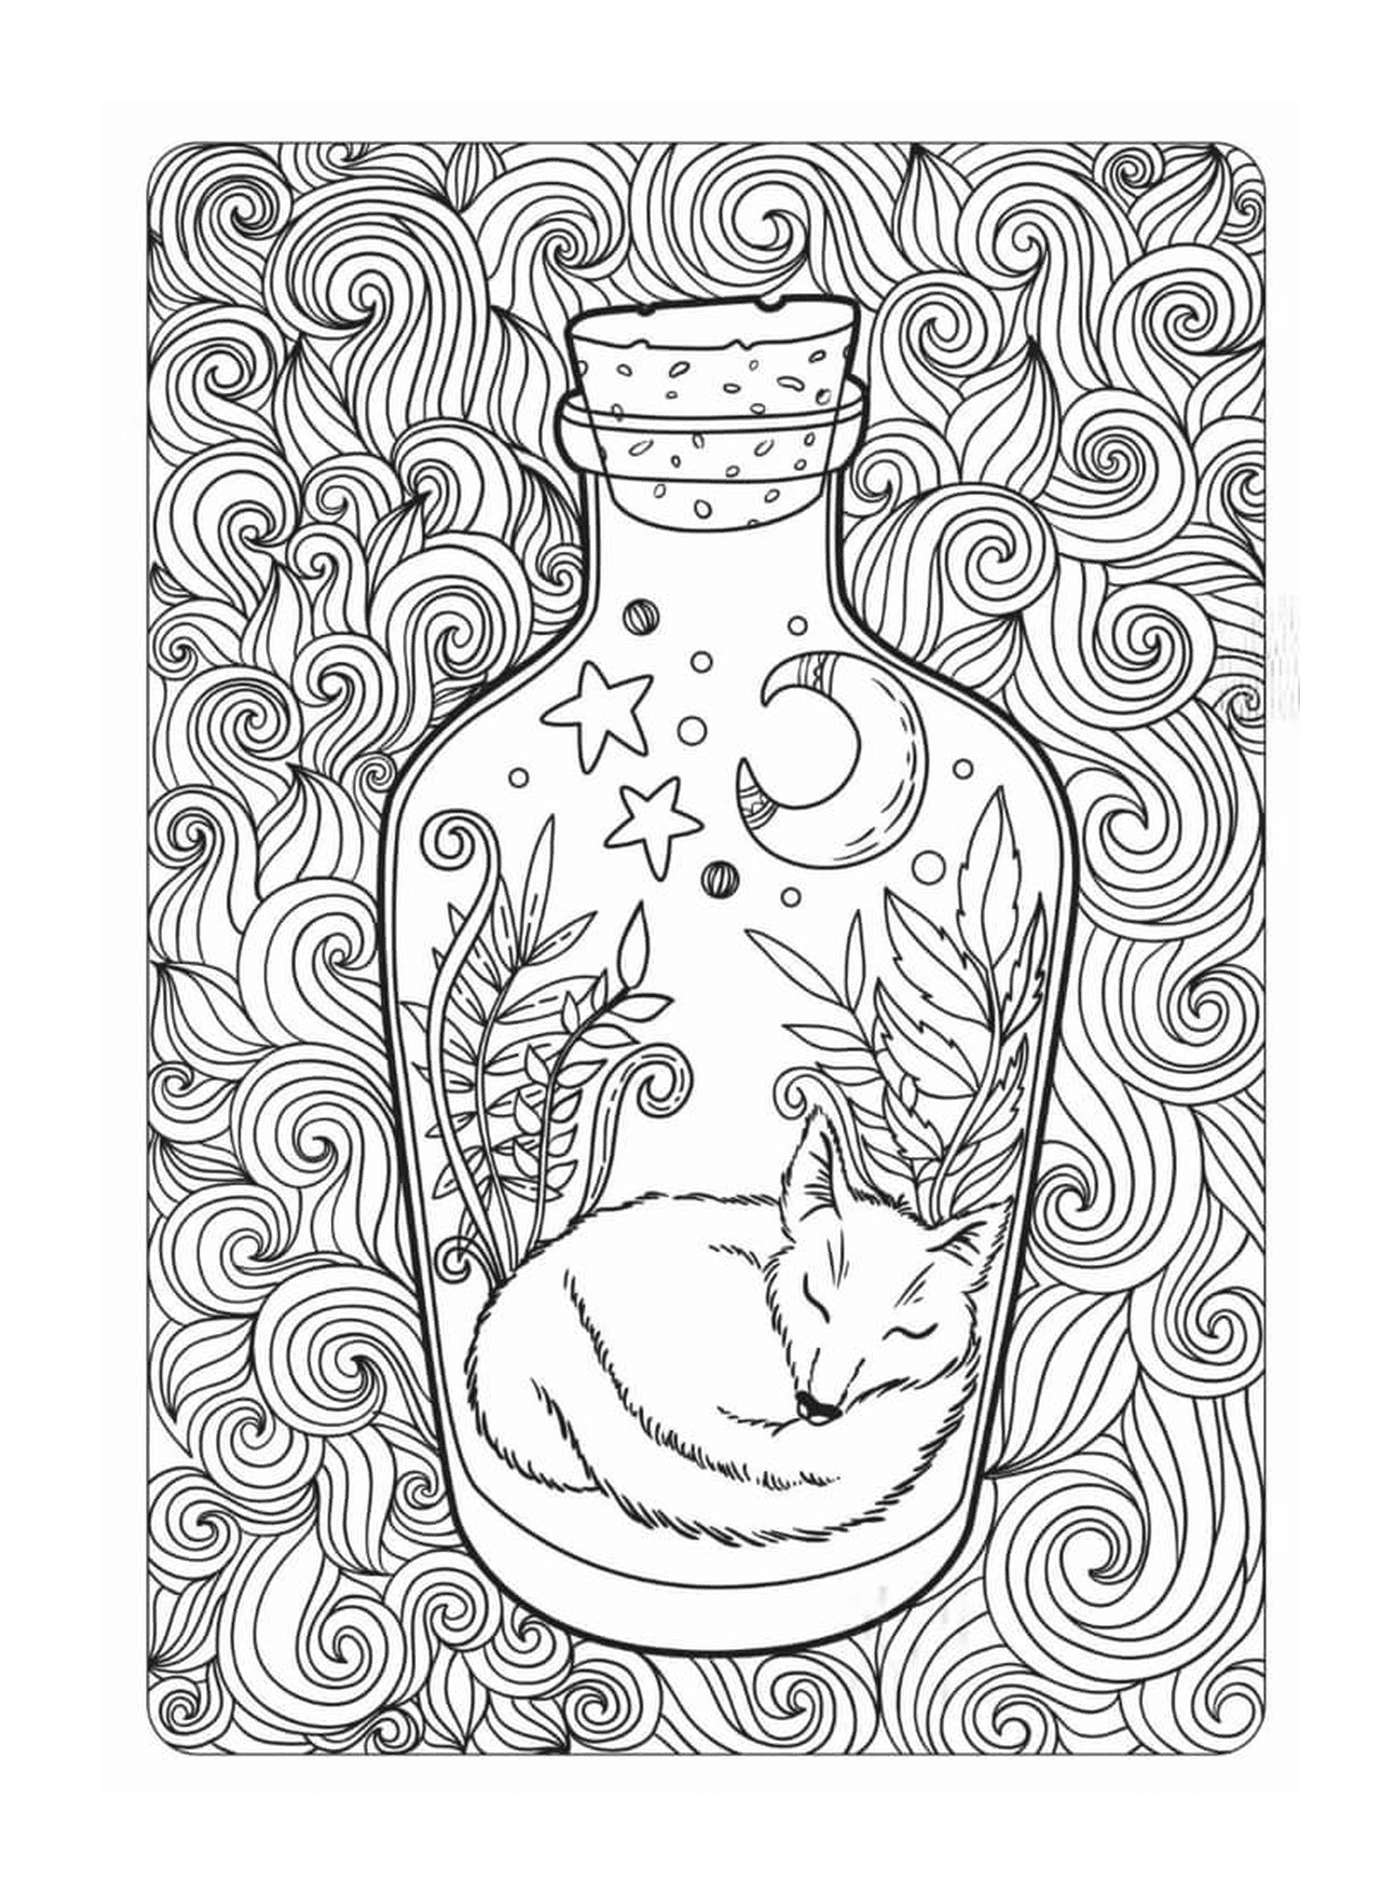 bouteille avec renard dormi dessin animal et foret motif